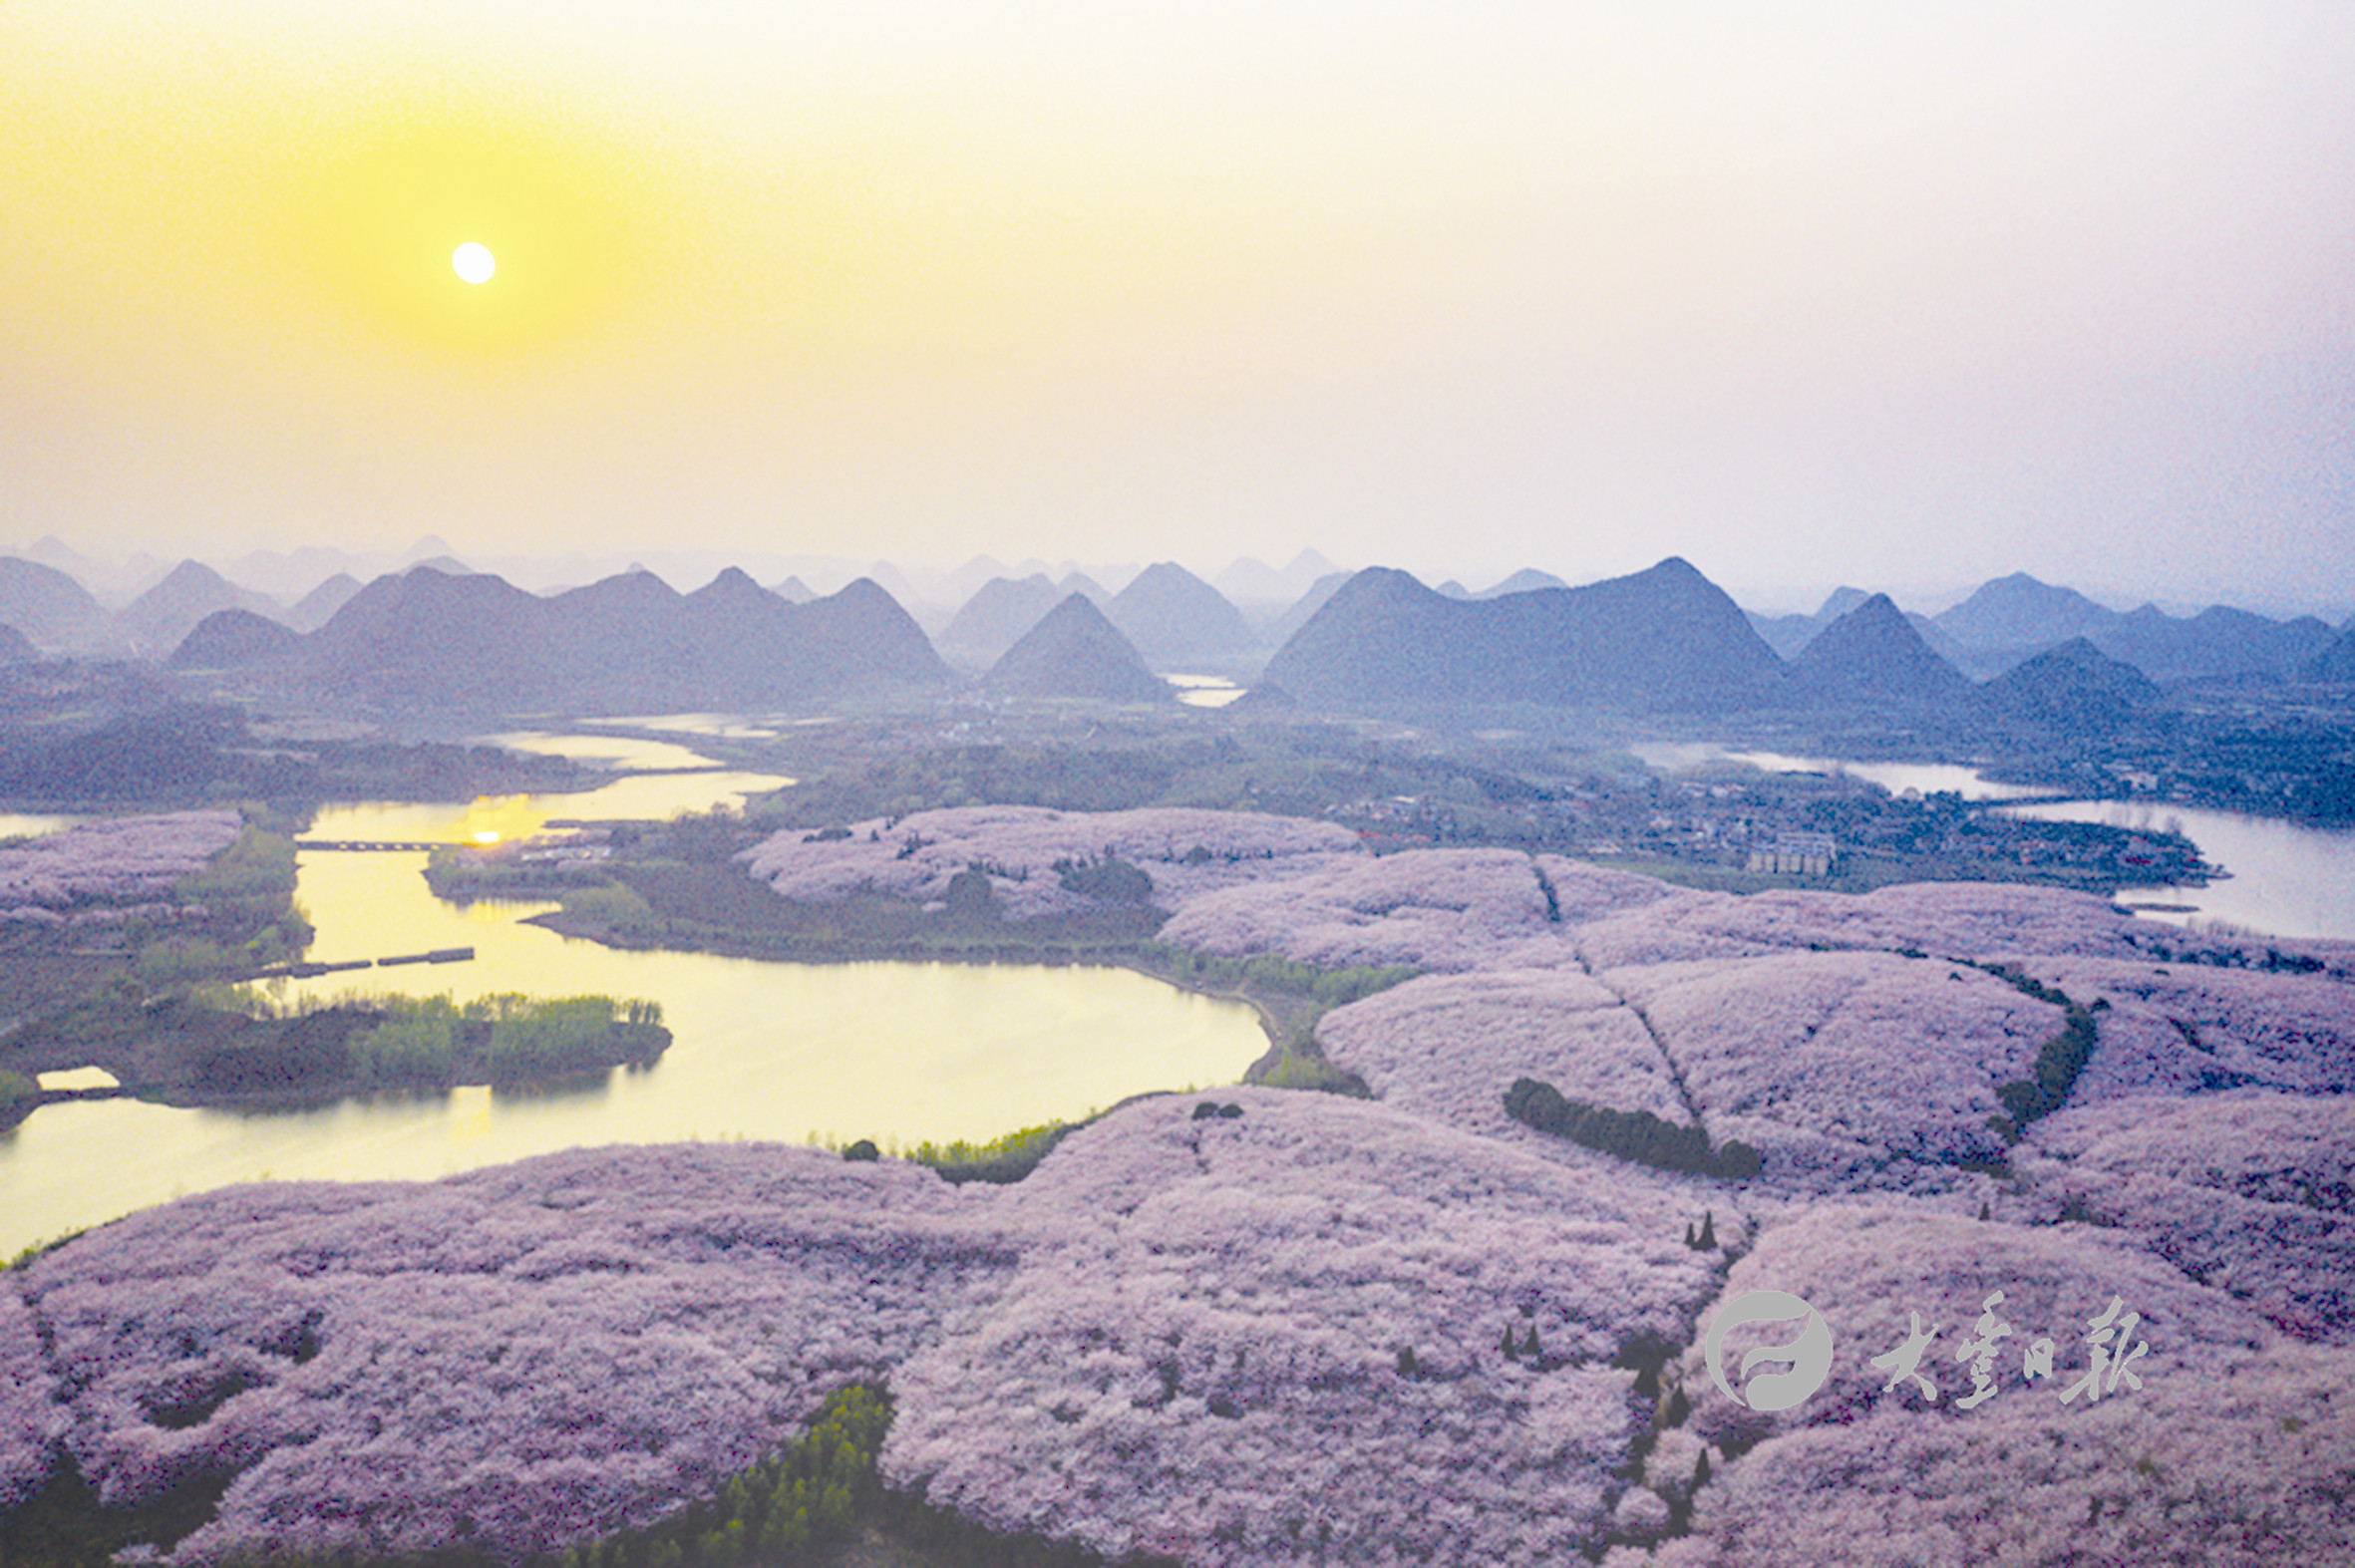 近日,贵州省贵安新区红枫湖畔的樱花观光园内万亩樱花竞相盛开,吸引不